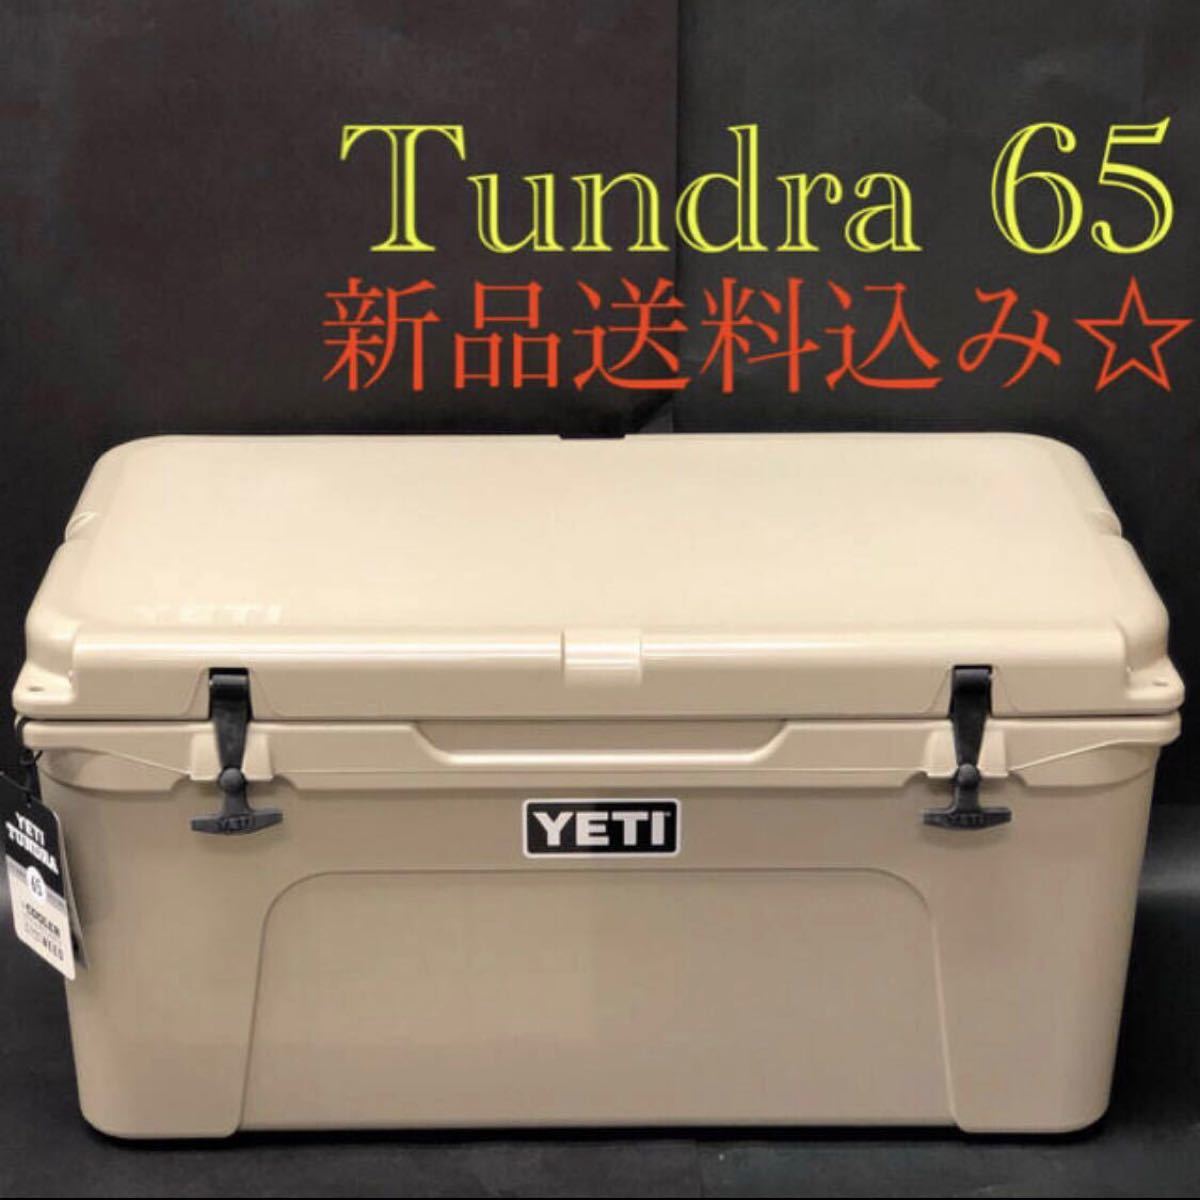 YETI イエティ タンドラ65 タン クーラーボックス-